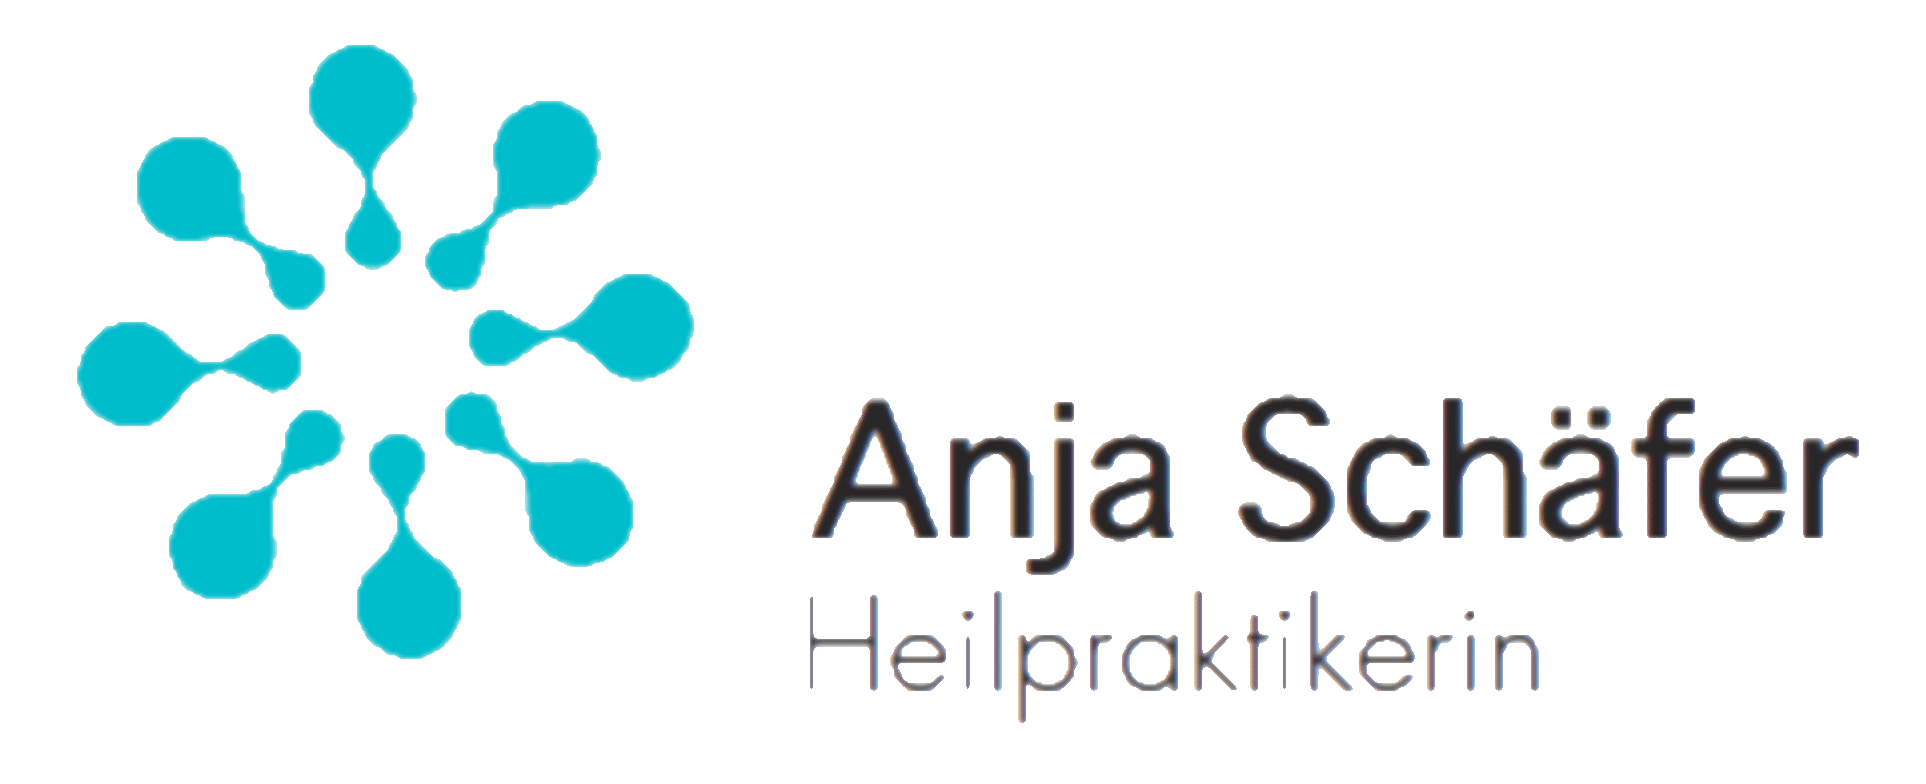 Anja Schäfer - Heilpraktikerin